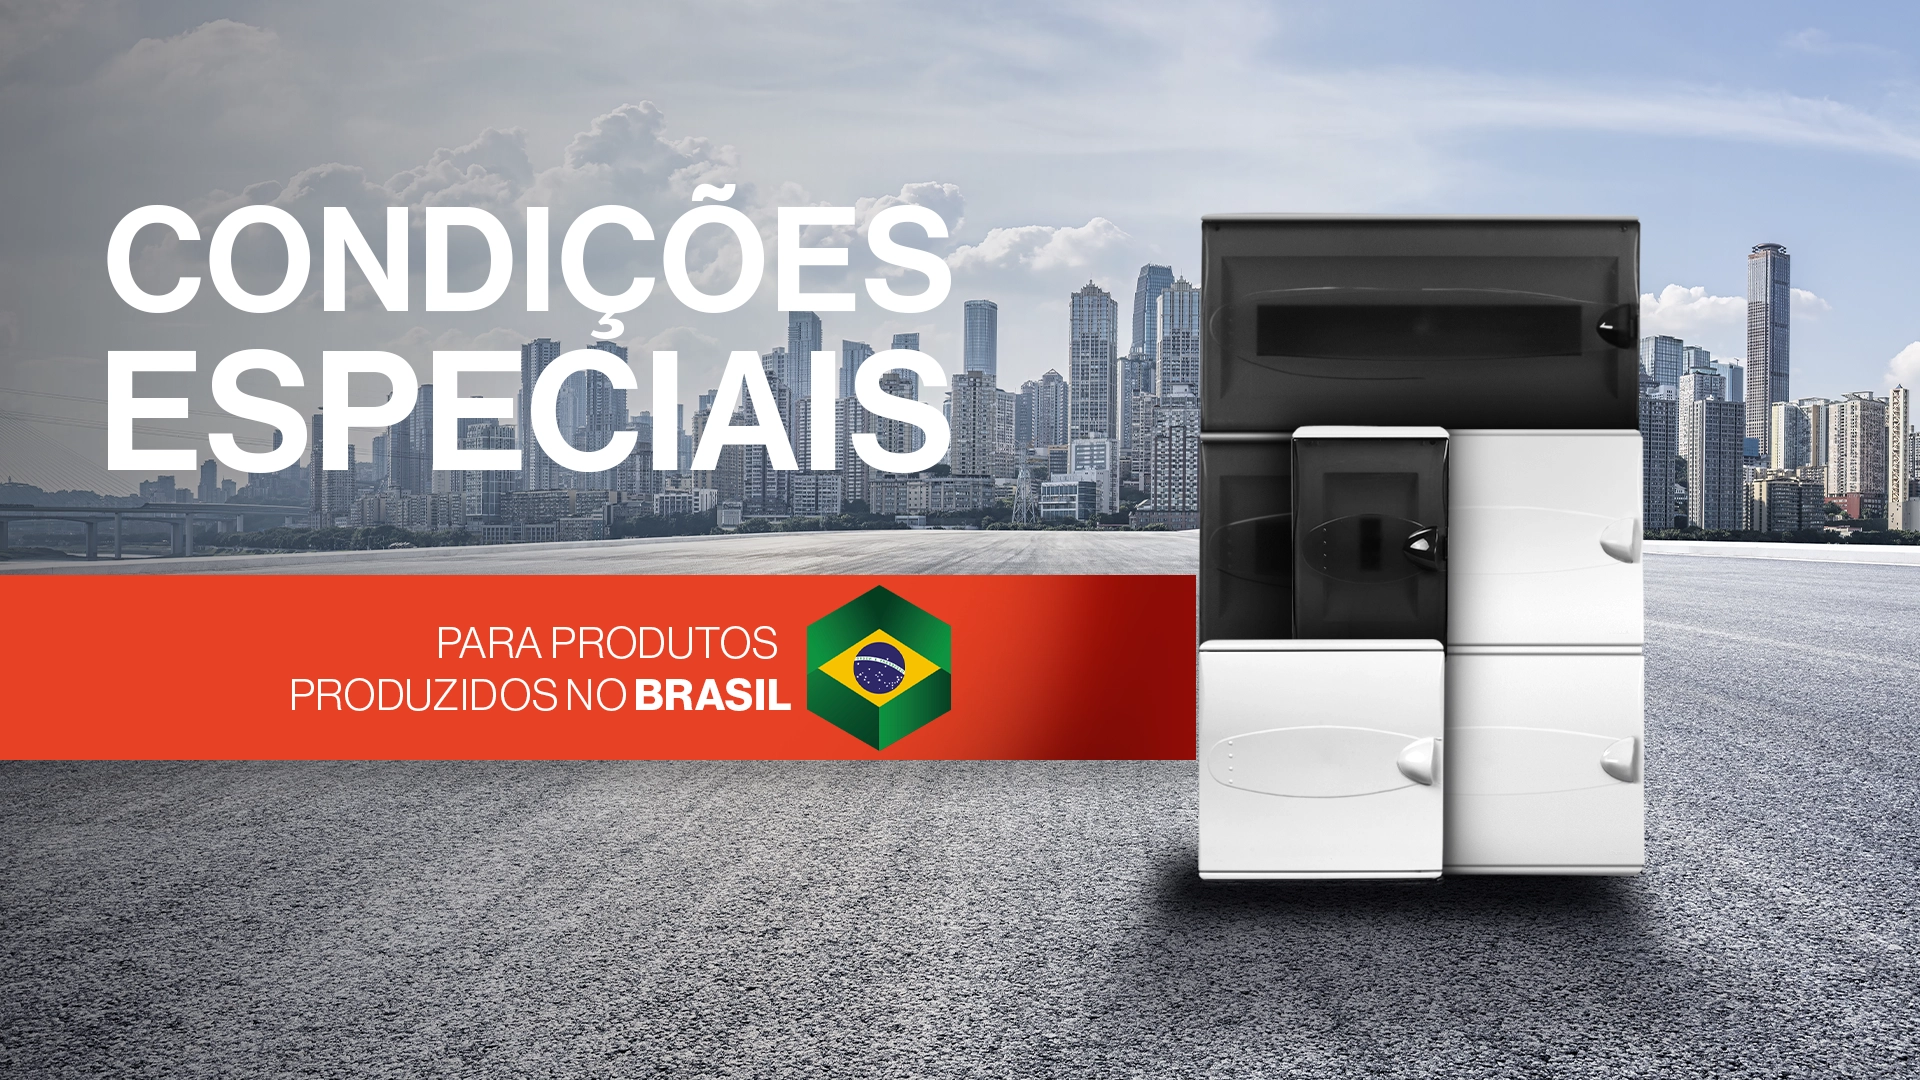 Condições especiais para produtos Brasileiros - materiais elétricos